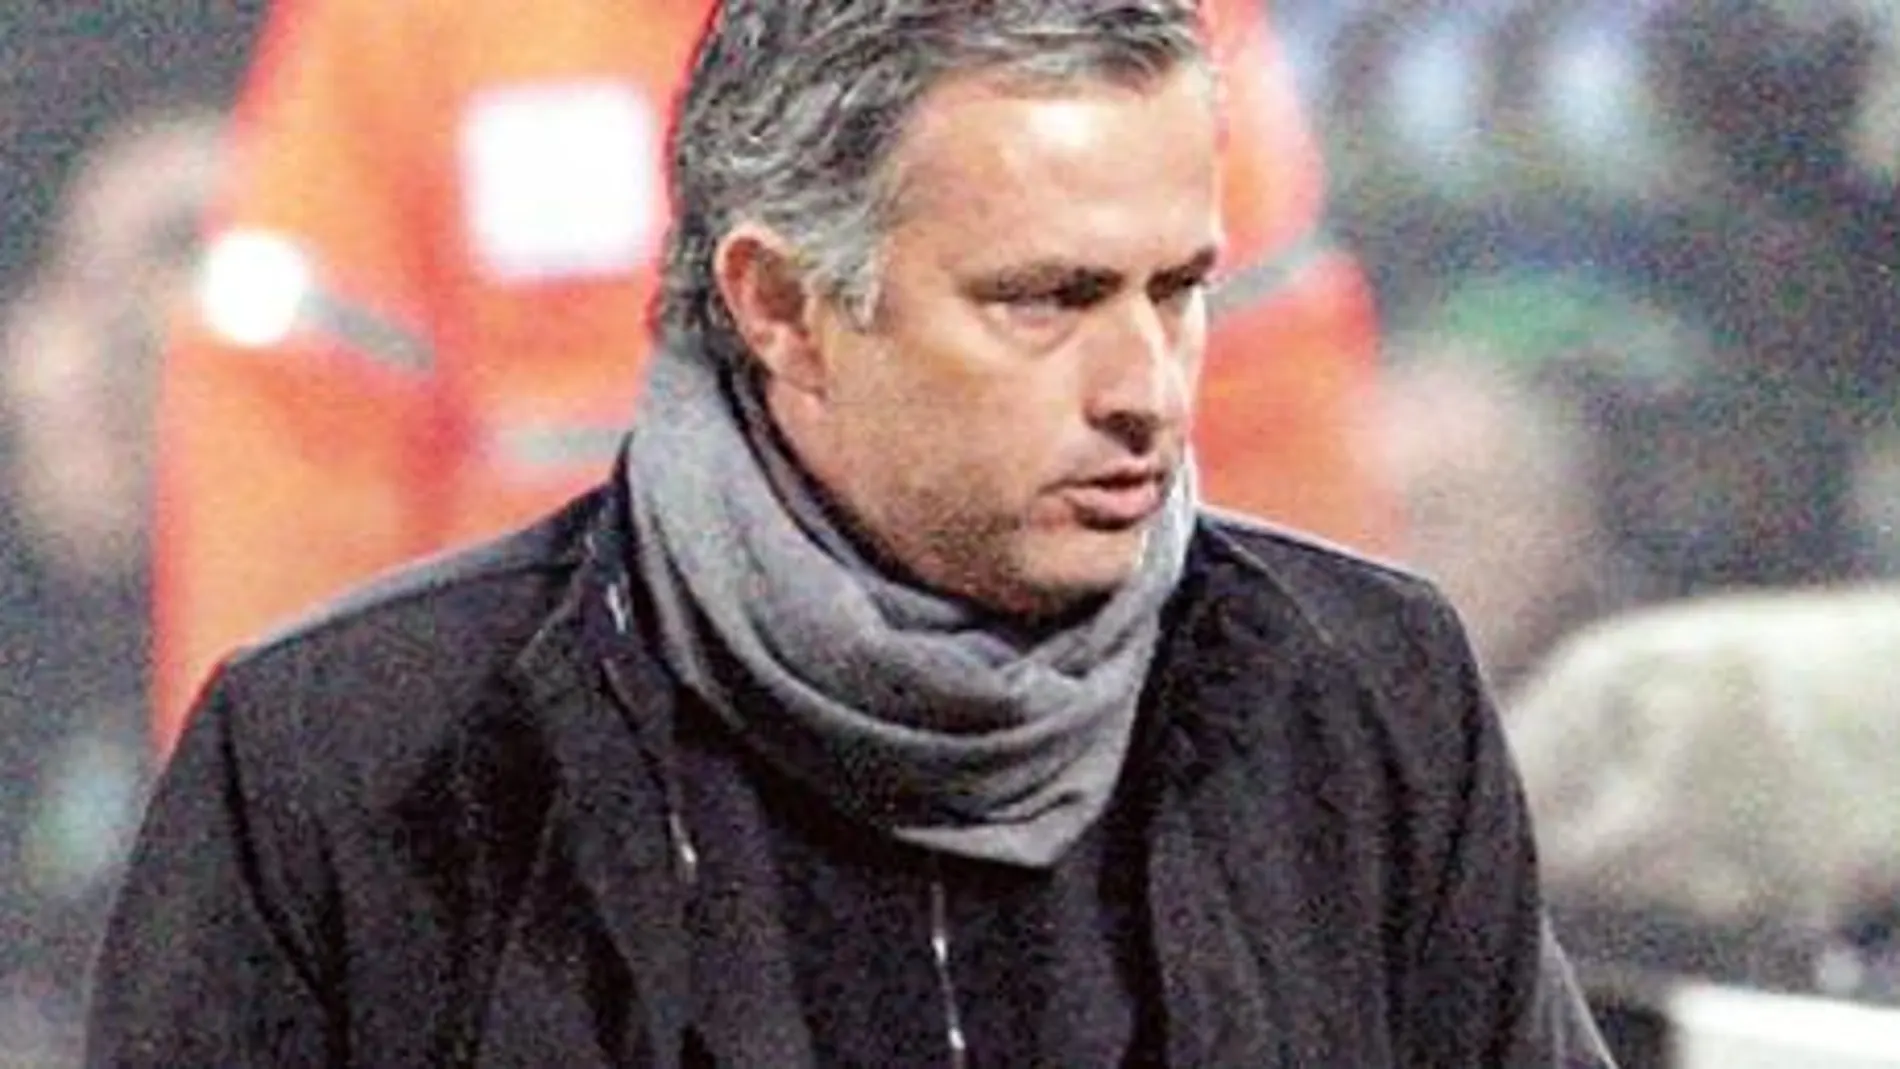 José Mourinho, técnico del Inter de Milán, fue motivo de discordia ayer en la candidatura de Florentino Pérez